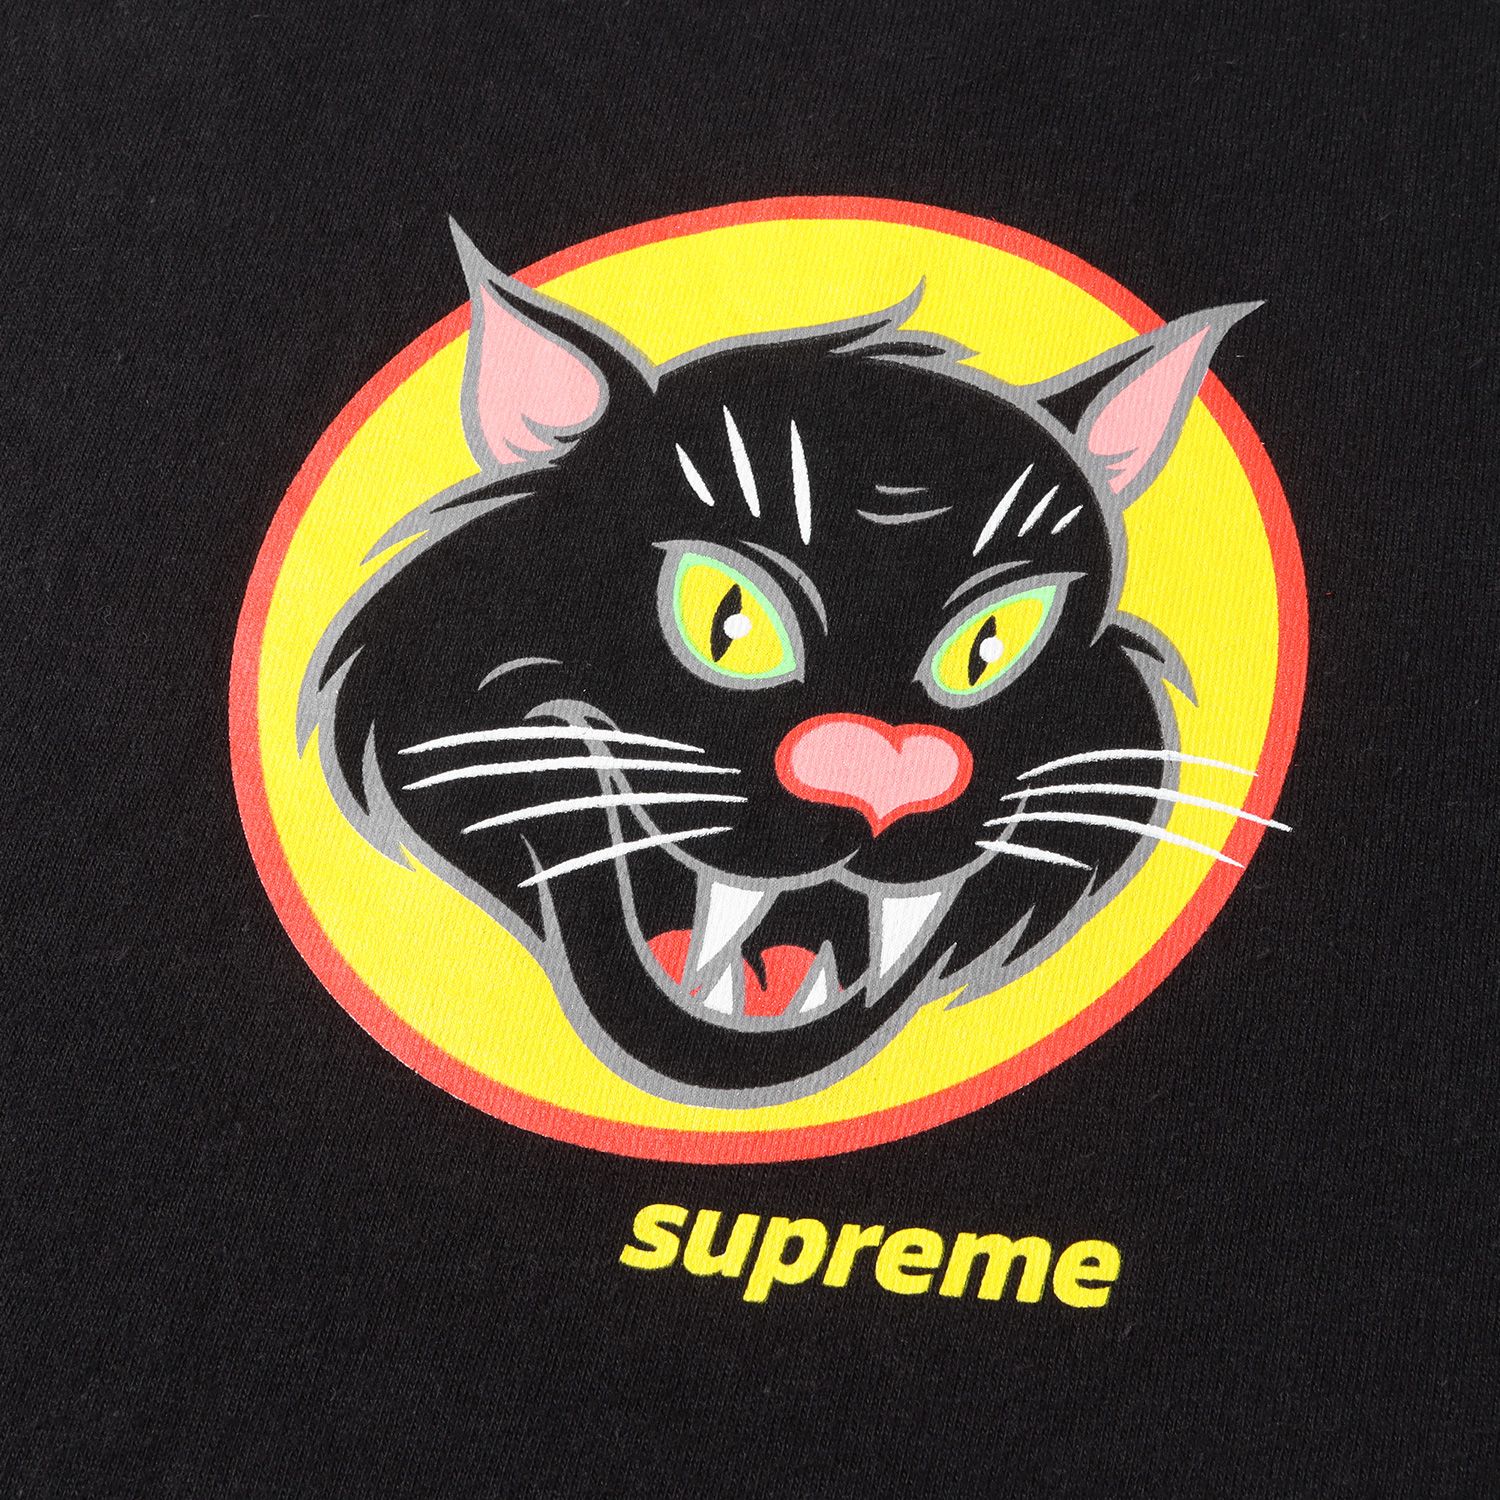 Supreme シュプリーム Tシャツ サイズ:M 20SS ブラックキャット グラフィック プリント クルーネック 半袖 Black Cat Tee ブラック 黒トップス カットソー カジュアル ブランド ストリート【メンズ】